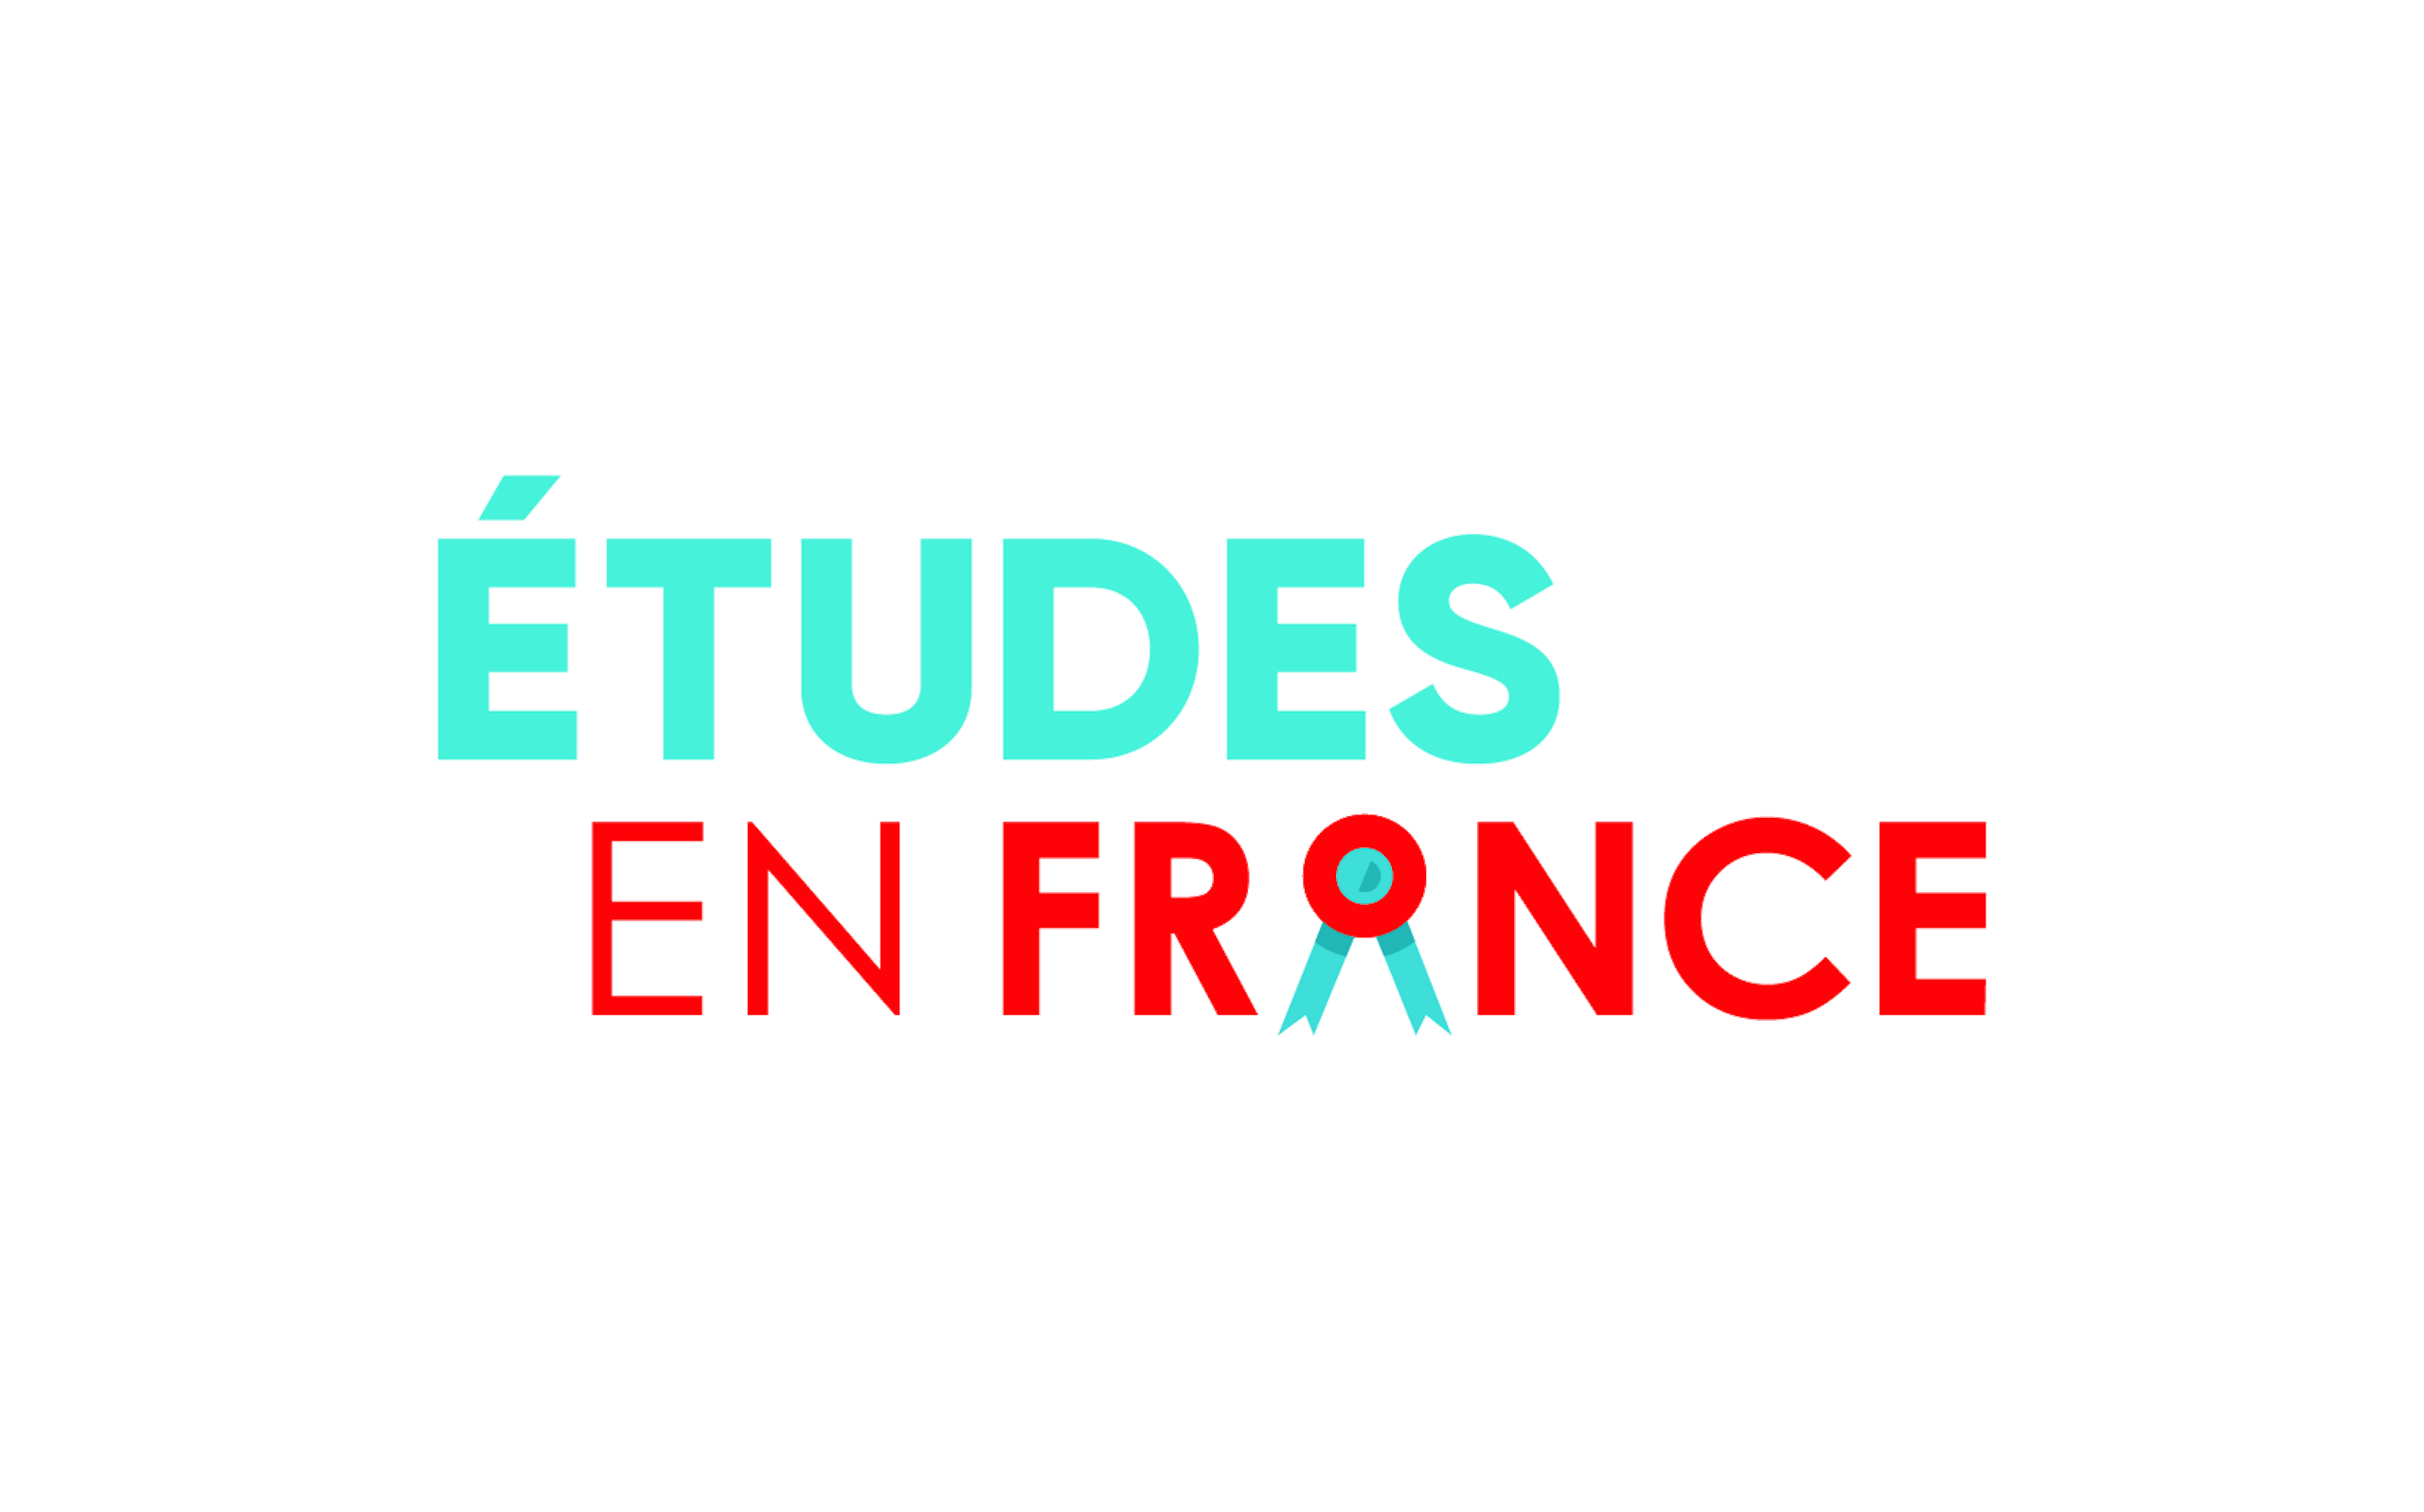 Link to the Etudes en France website